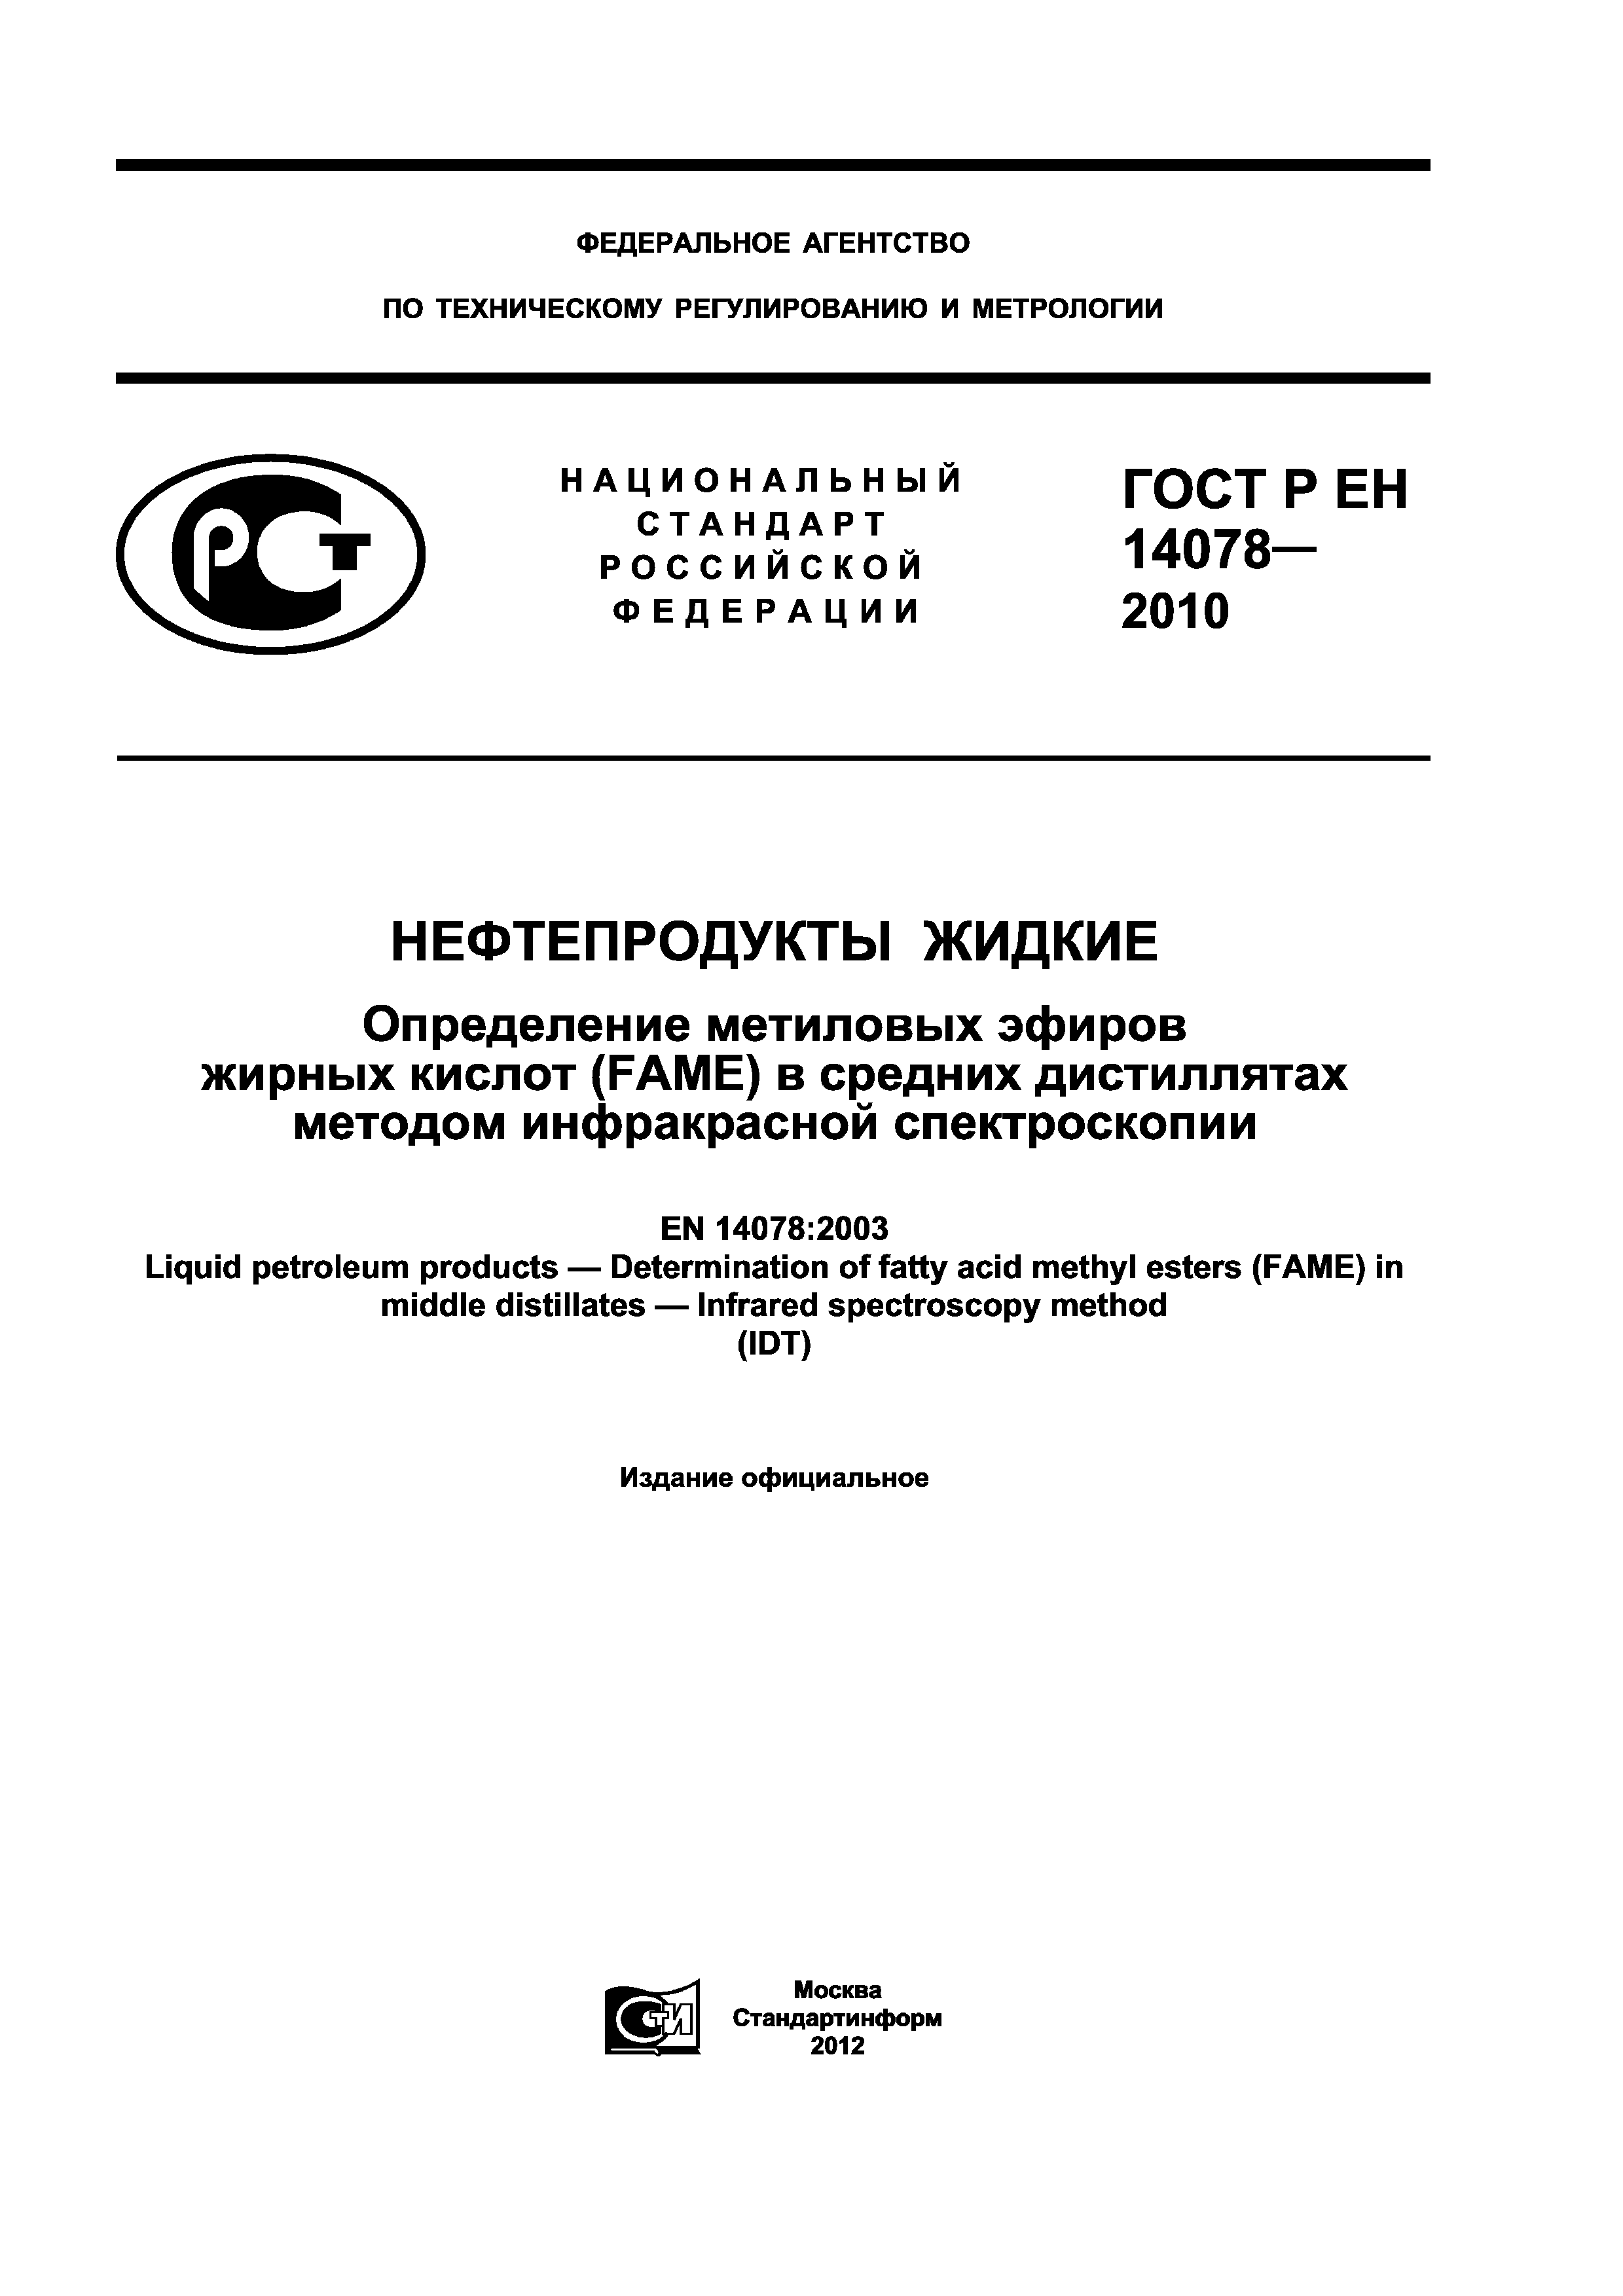 ГОСТ Р ЕН 14078-2010